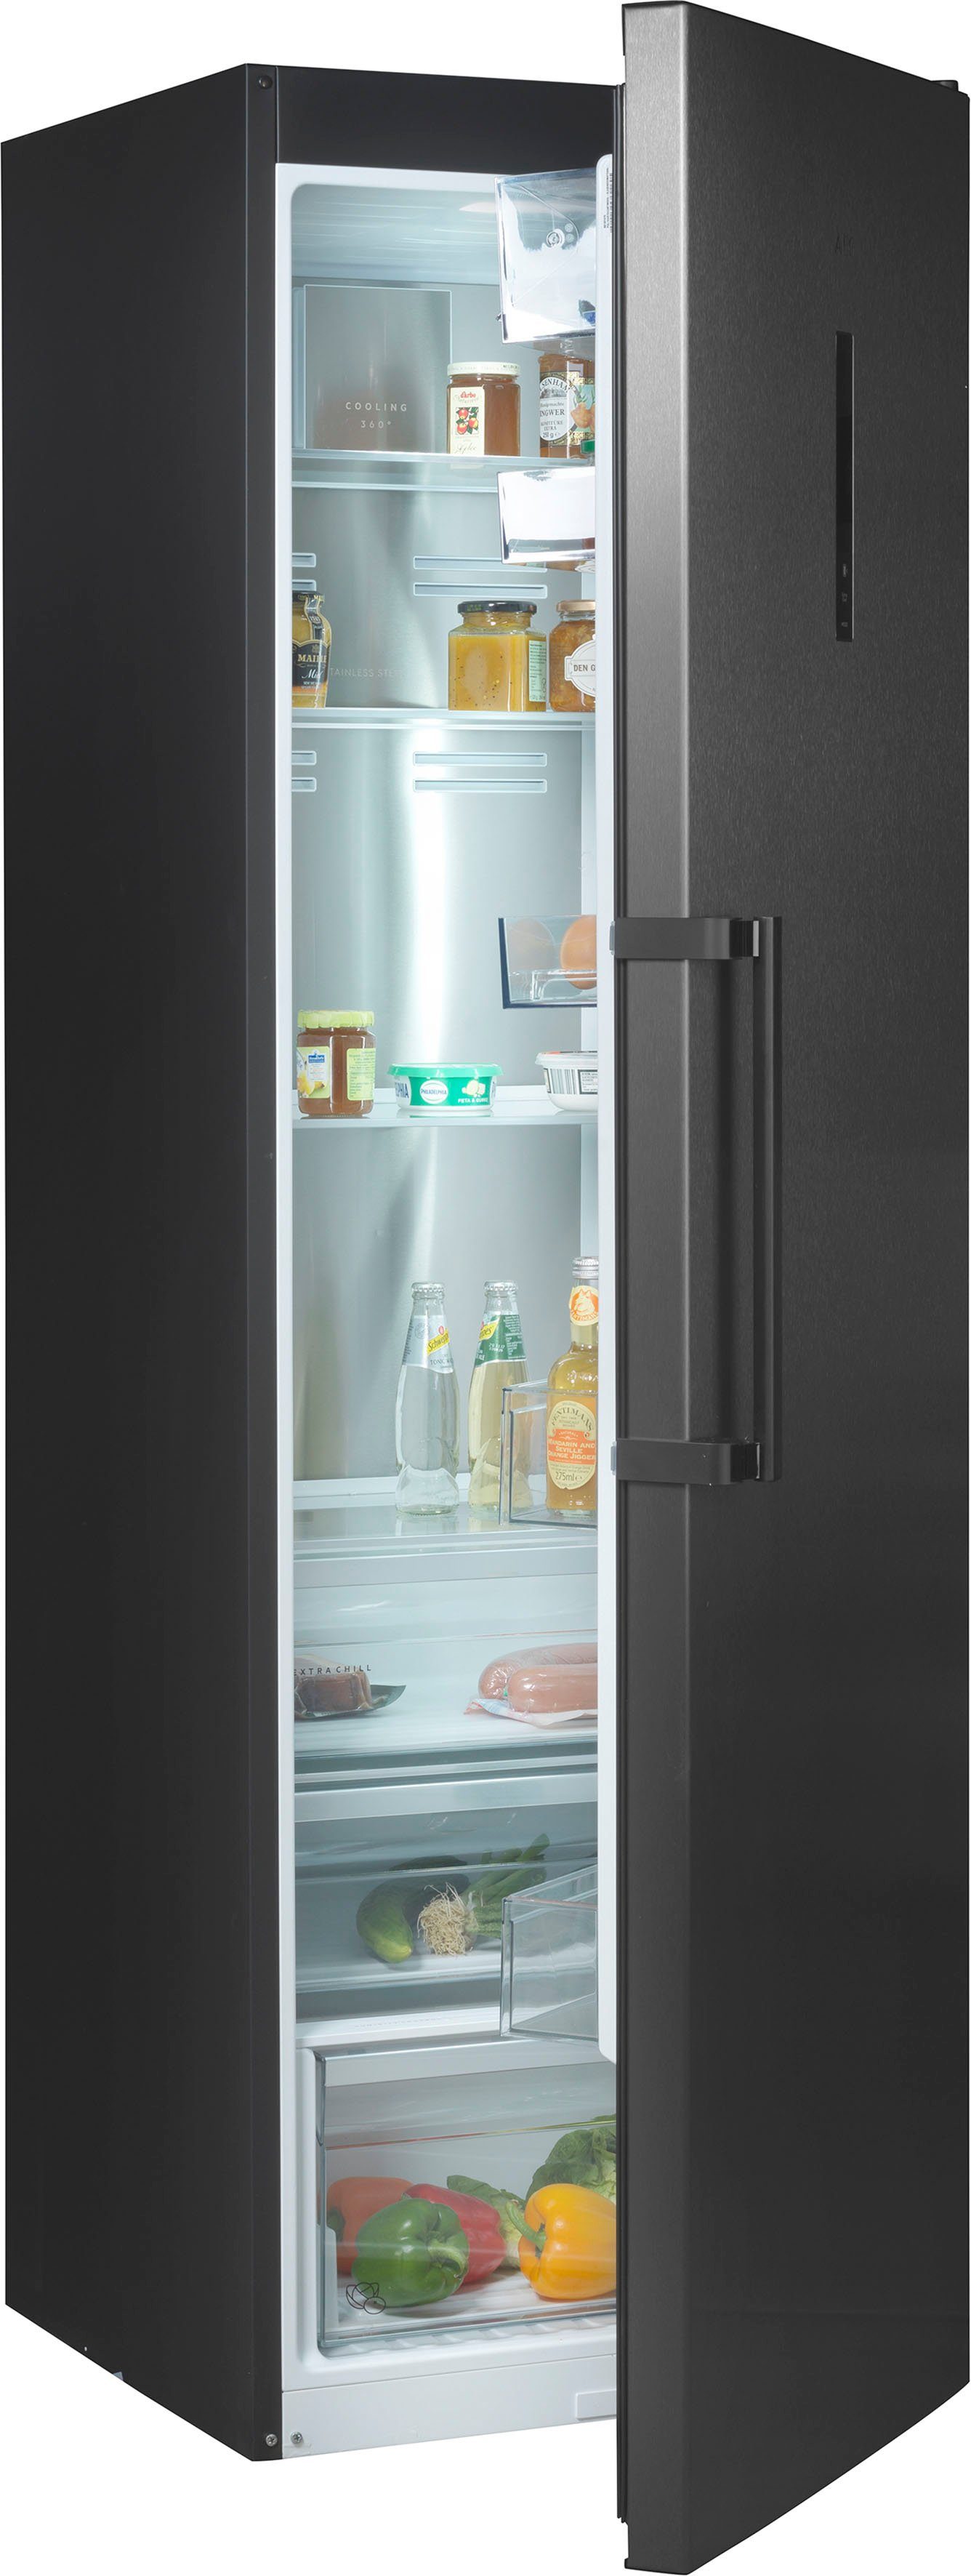 Graue Kühlschränke online kaufen | OTTO